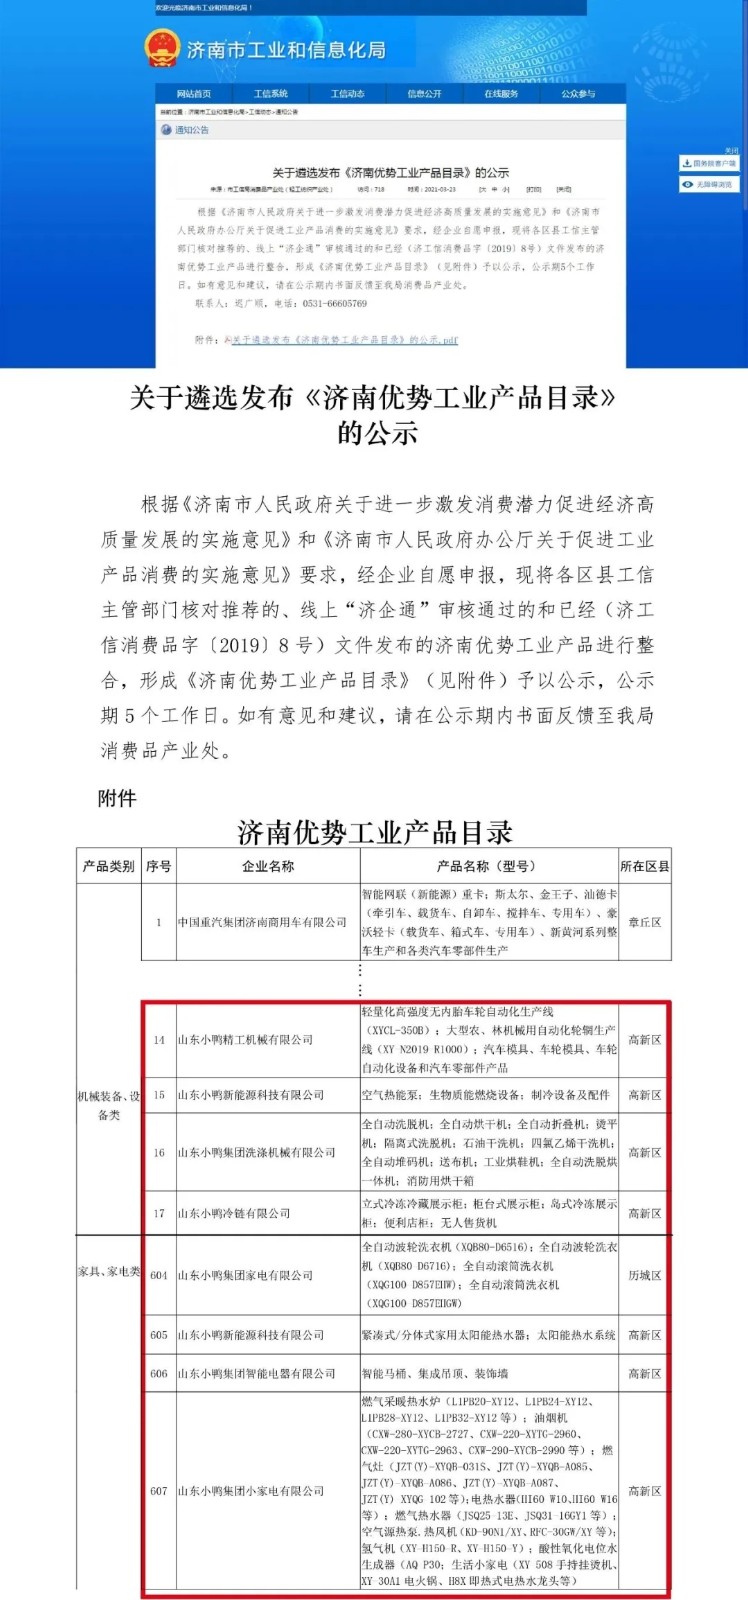 山东小鸭集团家电有限公司入选《济南市优势工业产品目录》